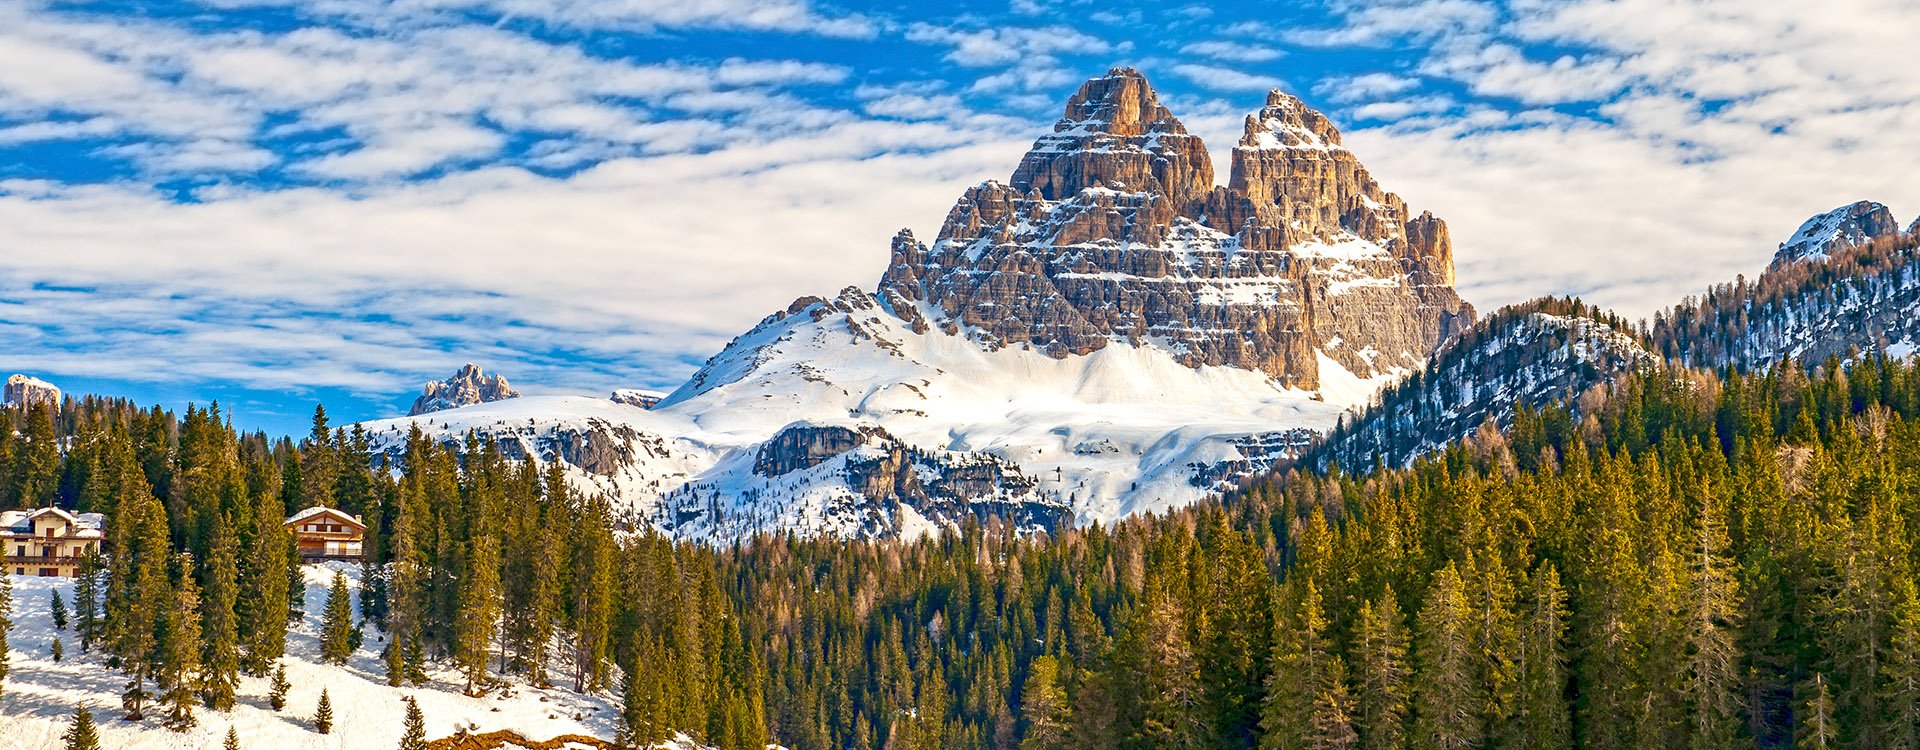 Tre Cime di Lavaredo peaks seen from Misurina lake in Dolomites, Italy